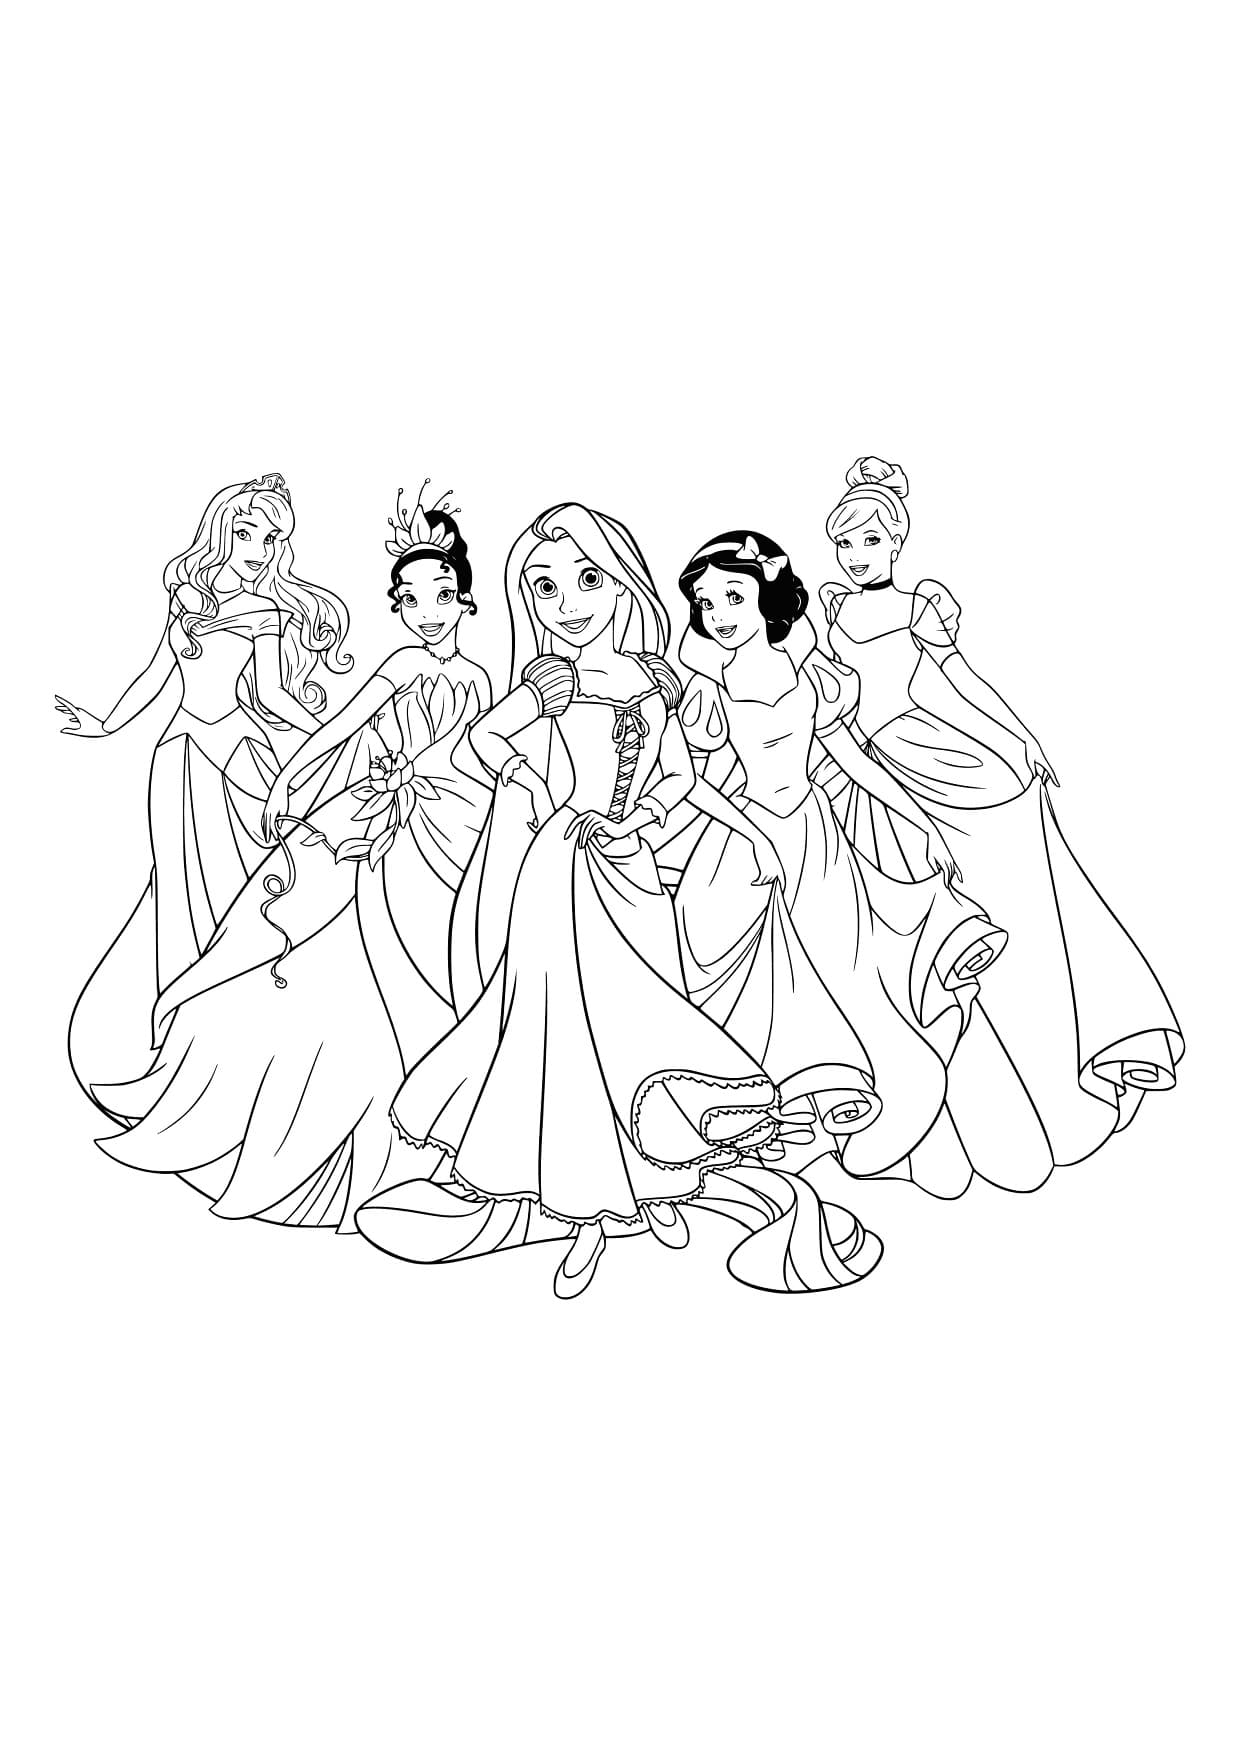 Раскраска Принцесса Жасмин | Раскраски из мультфильма Аладдин (Aladdin)